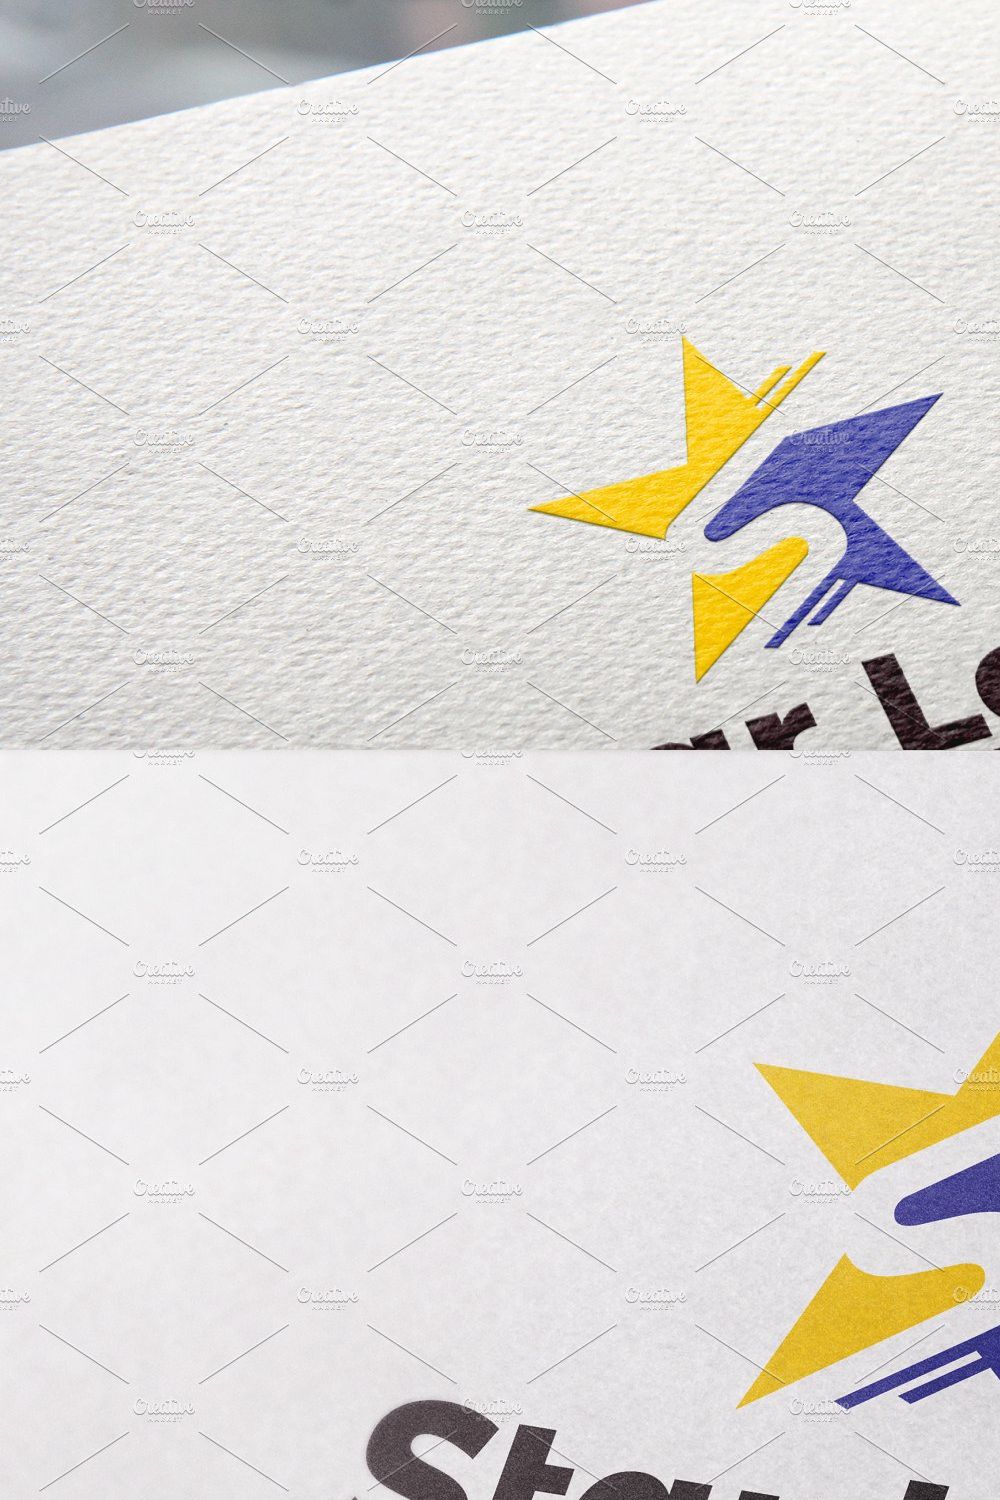 Star Logo | Letter S logo pinterest preview image.